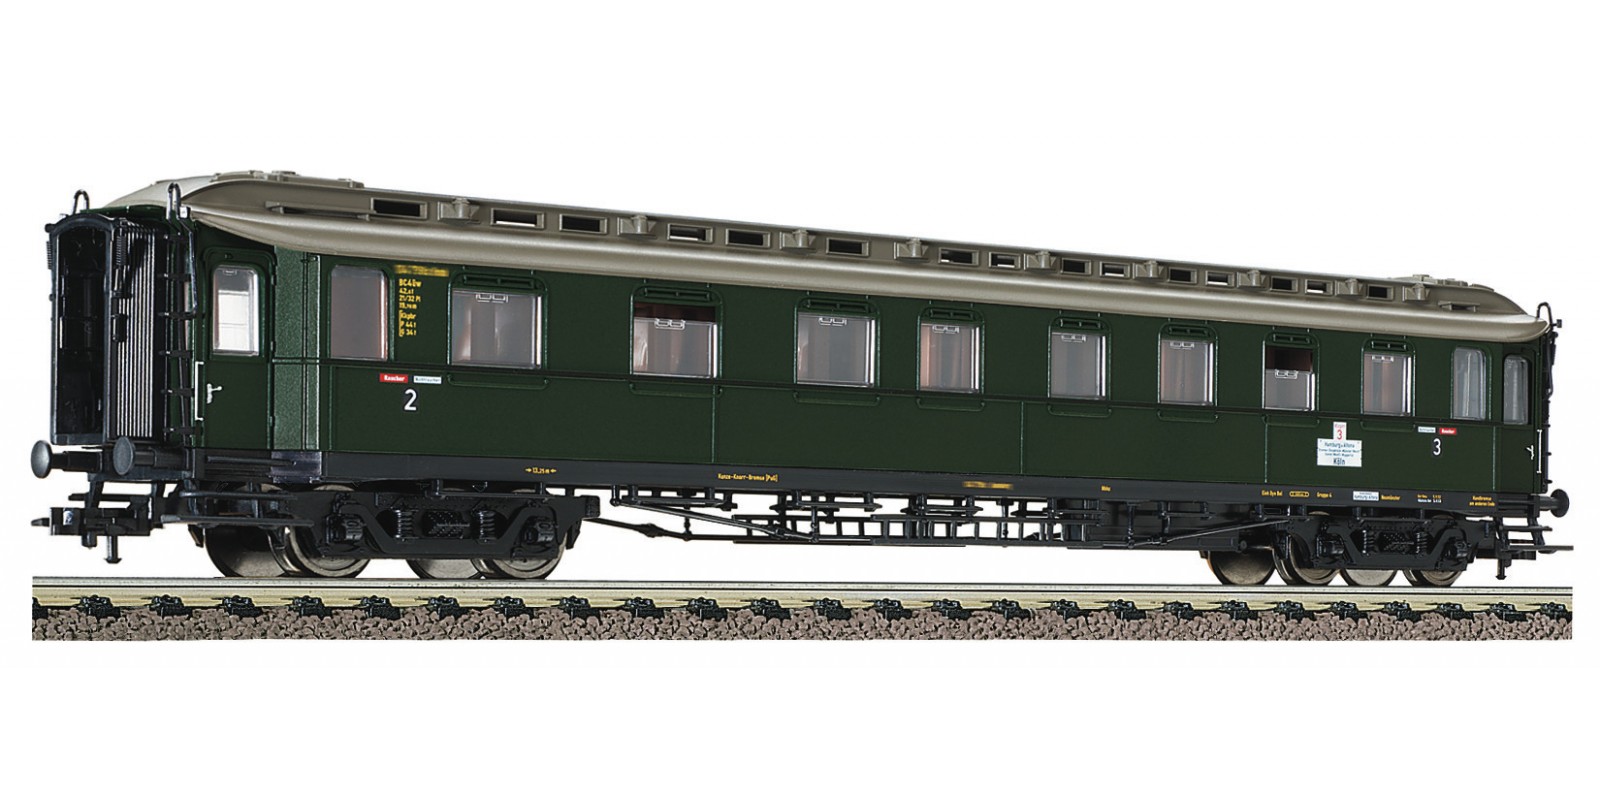 FL568203 - Express train car 2nd/3rd class type BC4ü w, DB